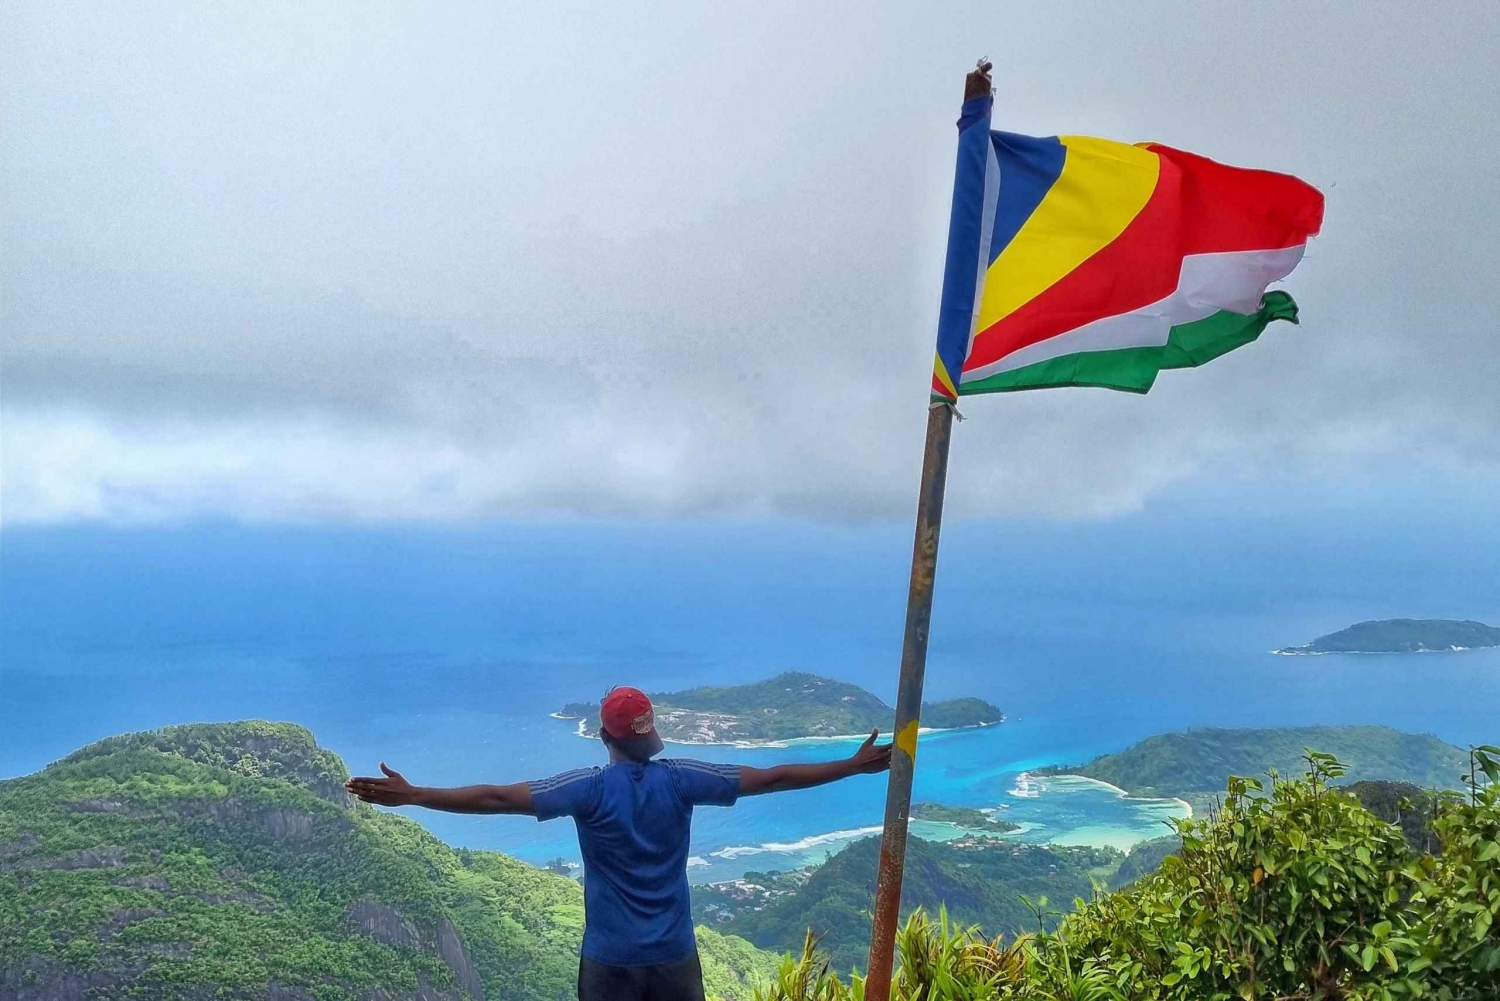 Excursión de aventura épica al punto más alto de las Seychelles